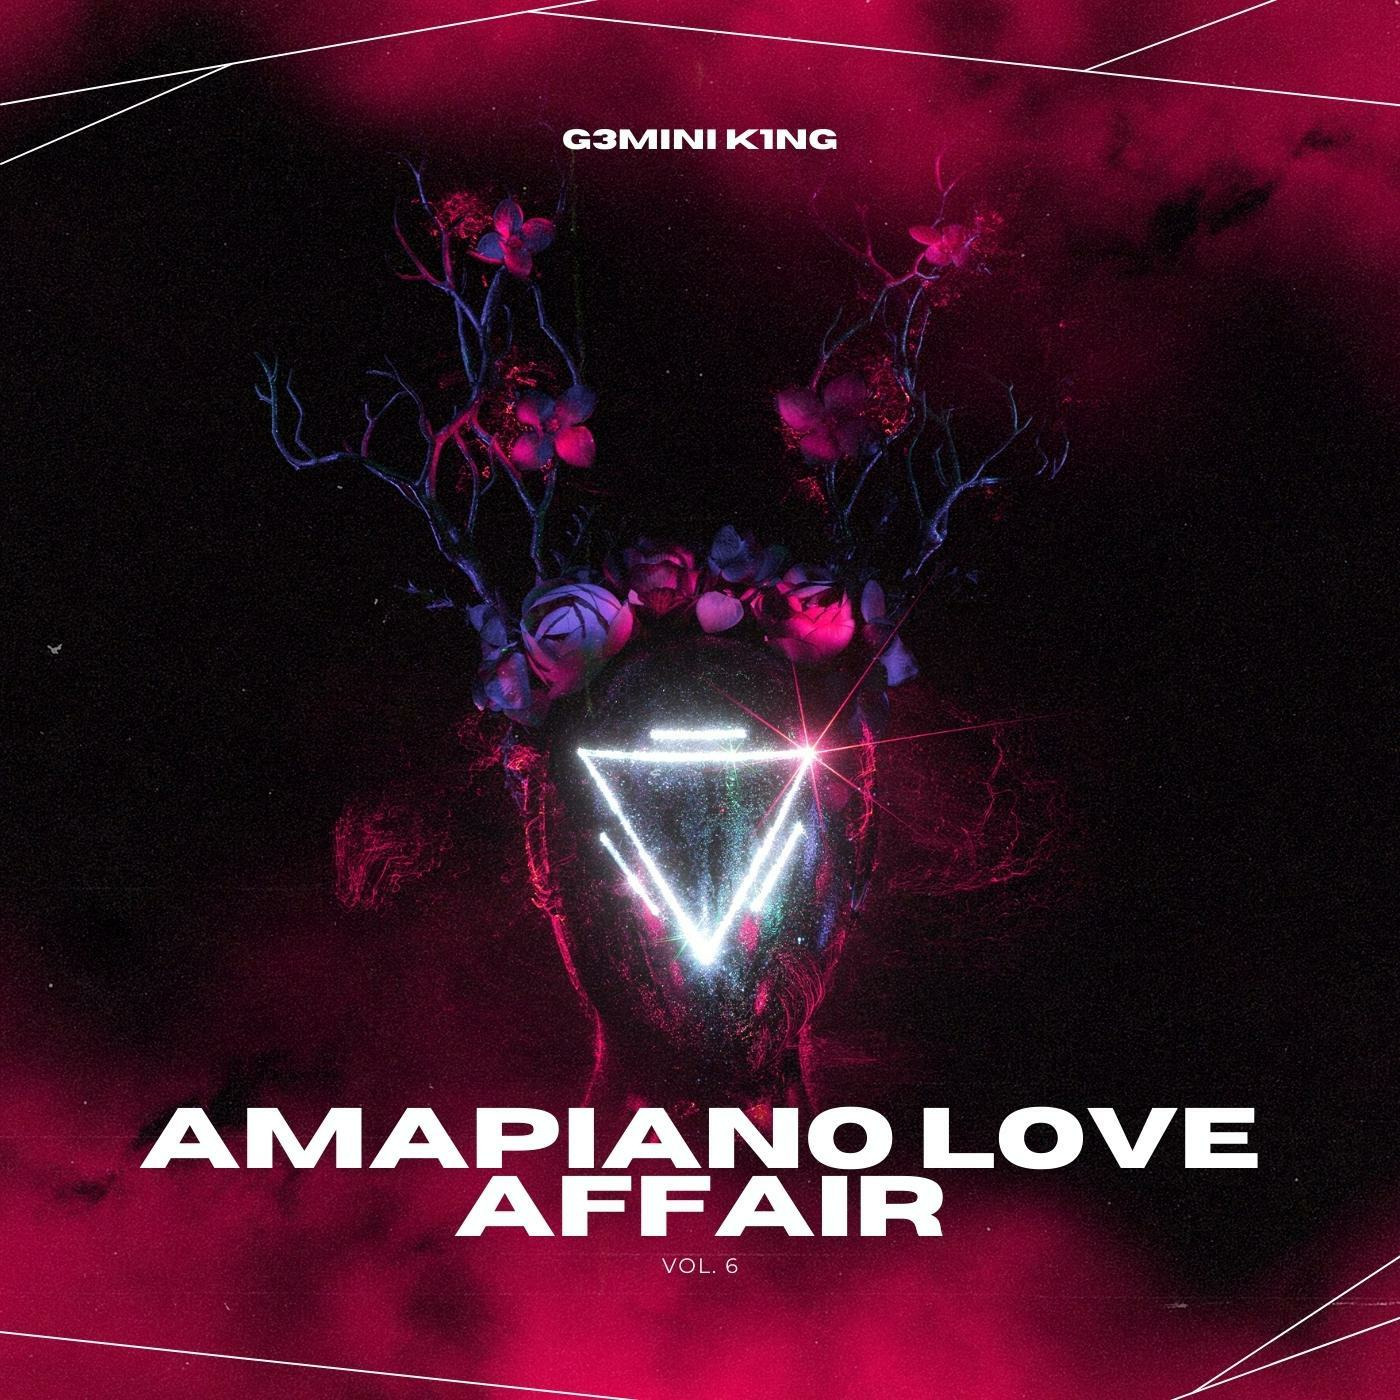 Amapiano Love Affair™ Vol. 06 (Mixed by G3MINI K1NG)